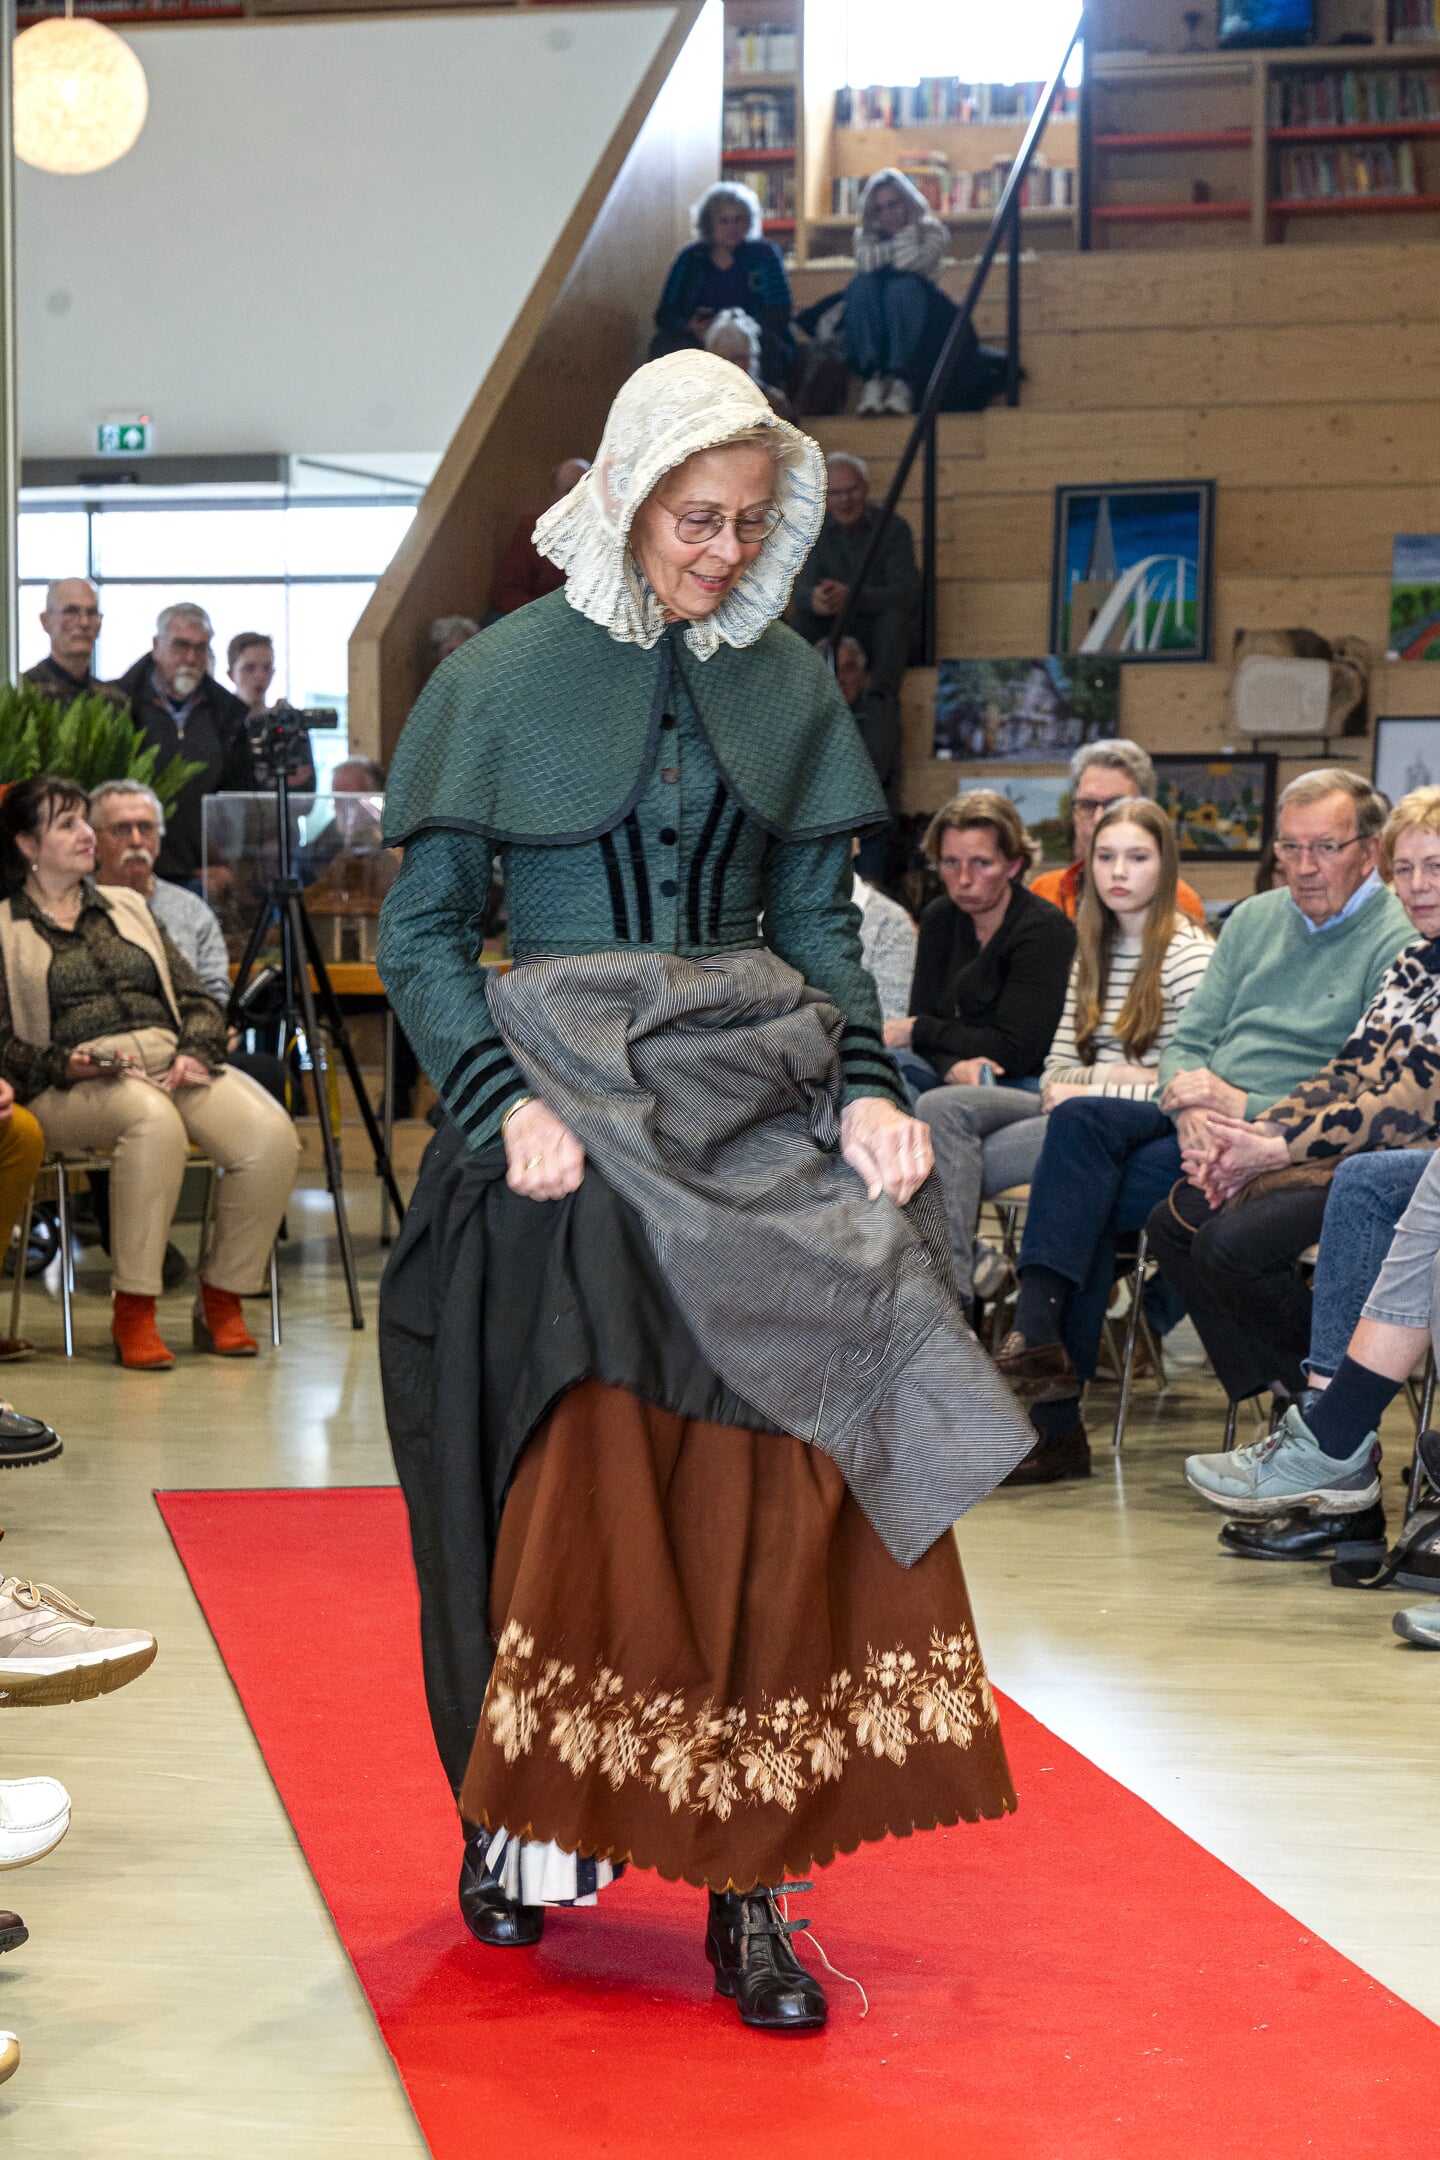 Modeshow Historische Vereniging Hoogblokland, Hoornaar en Noordeloos